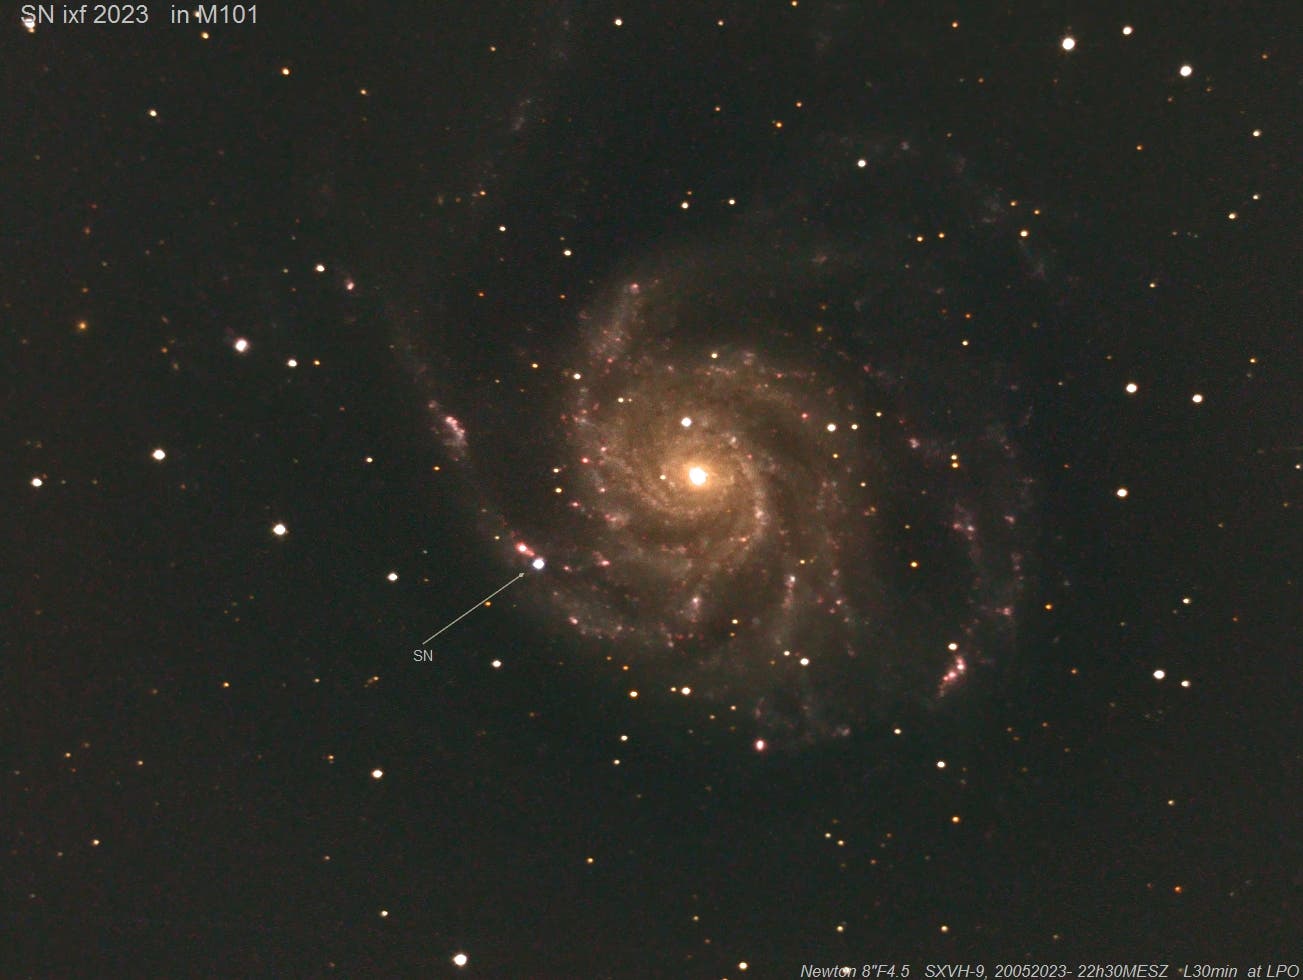 Congrats again: Koichi Itagaki SN ixf2023 in M101